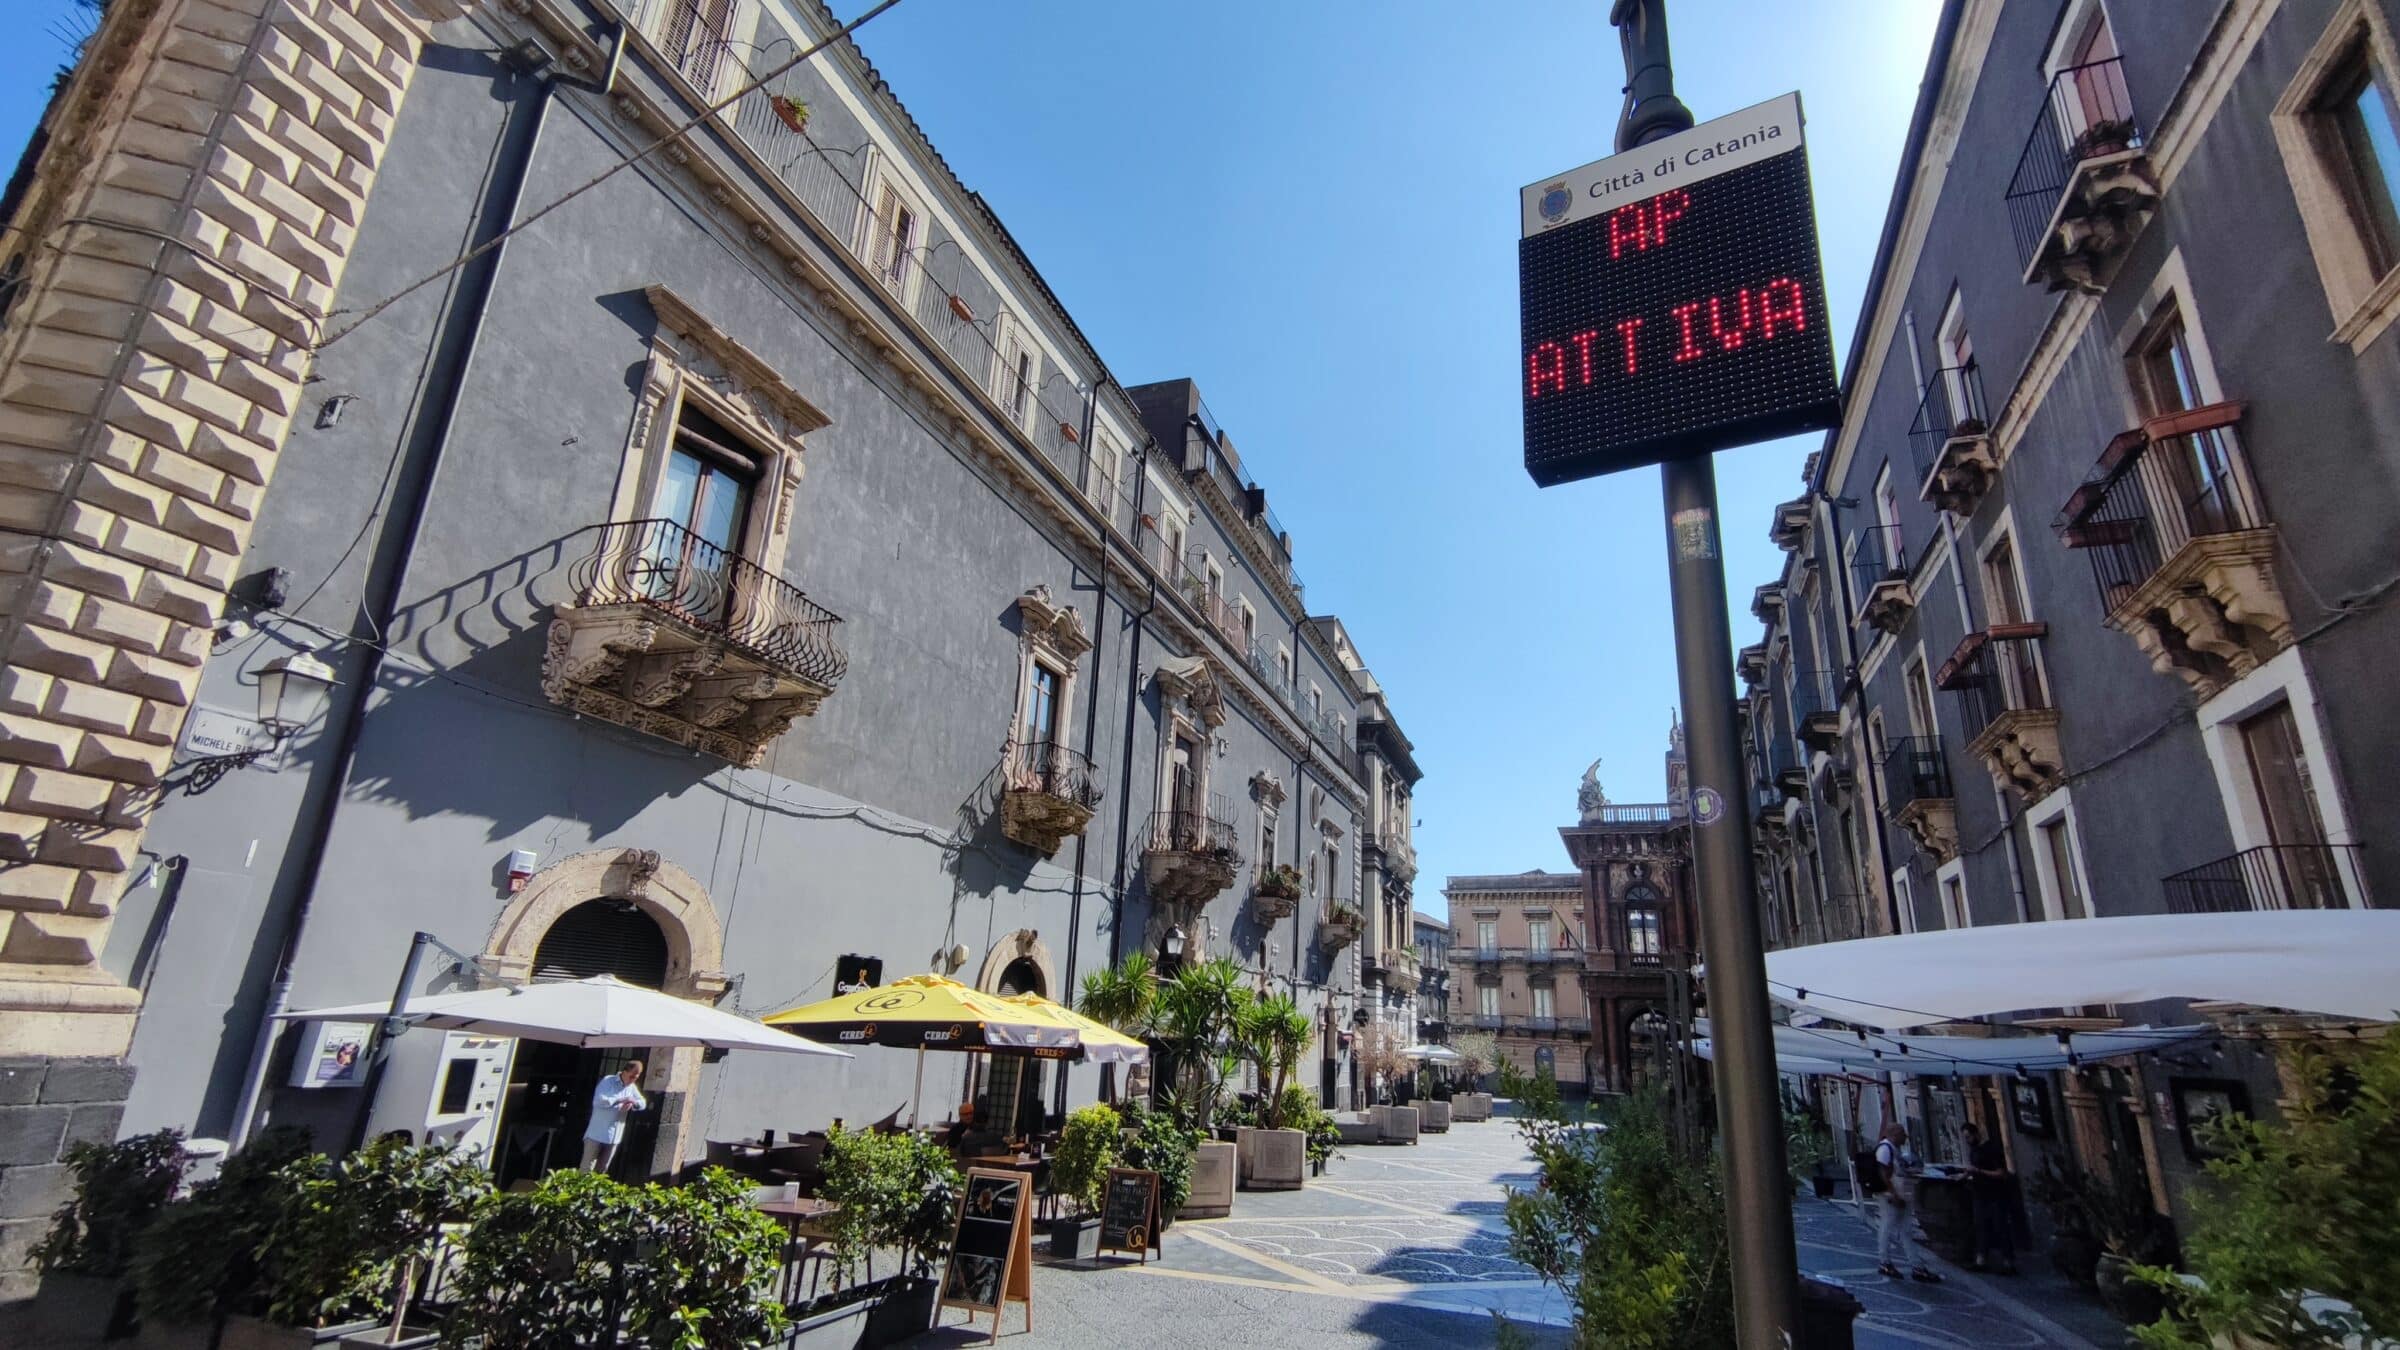 “ZTL e Aree pedonali” nella città di Catania: un primo bilancio sui vantaggi per la mobilità